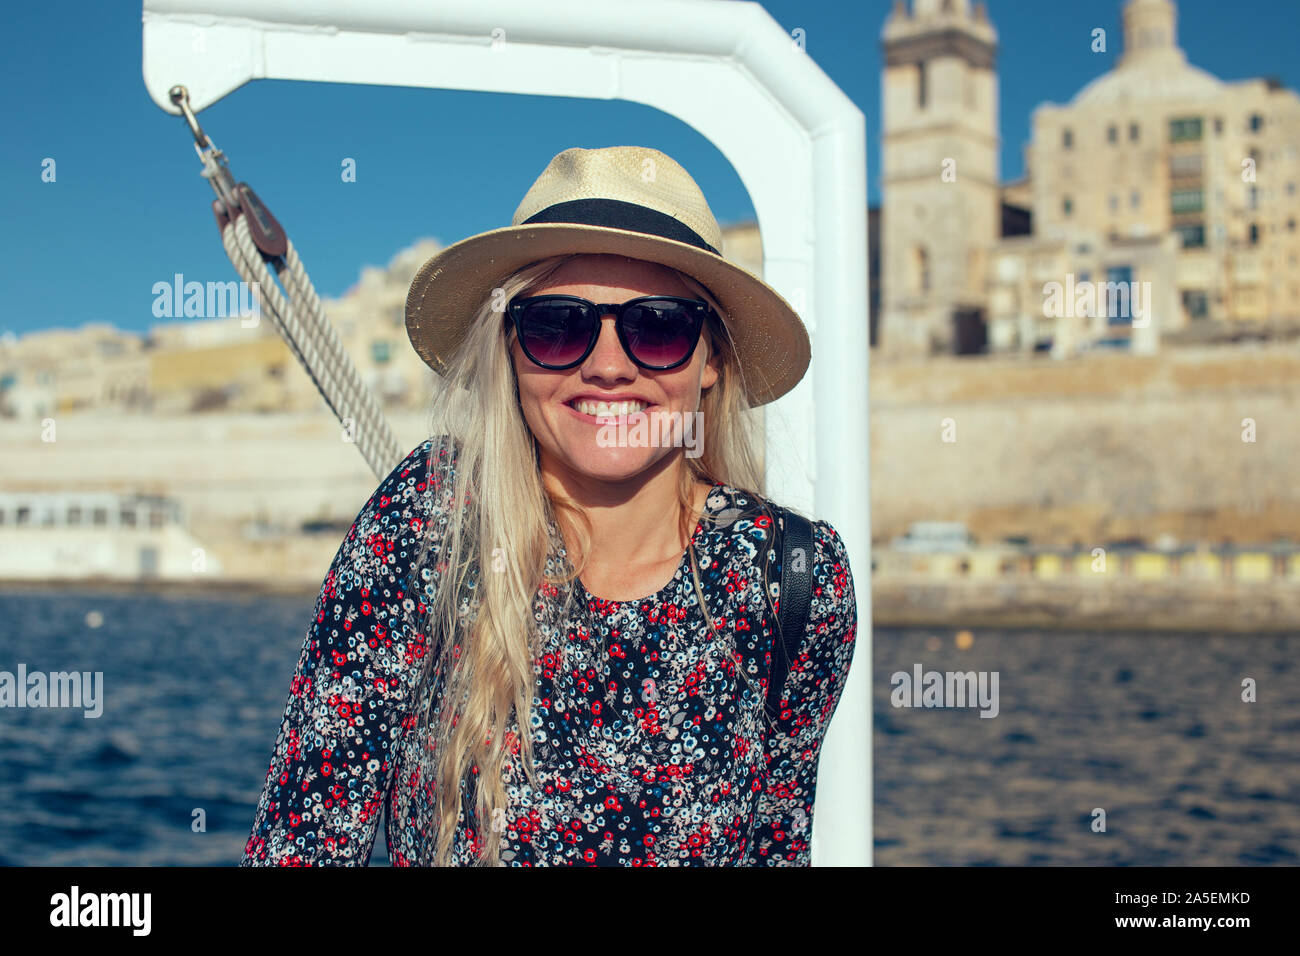 Happy young 20s meilleur femme voyageant par bateau sur la mer Méditerranée Banque D'Images